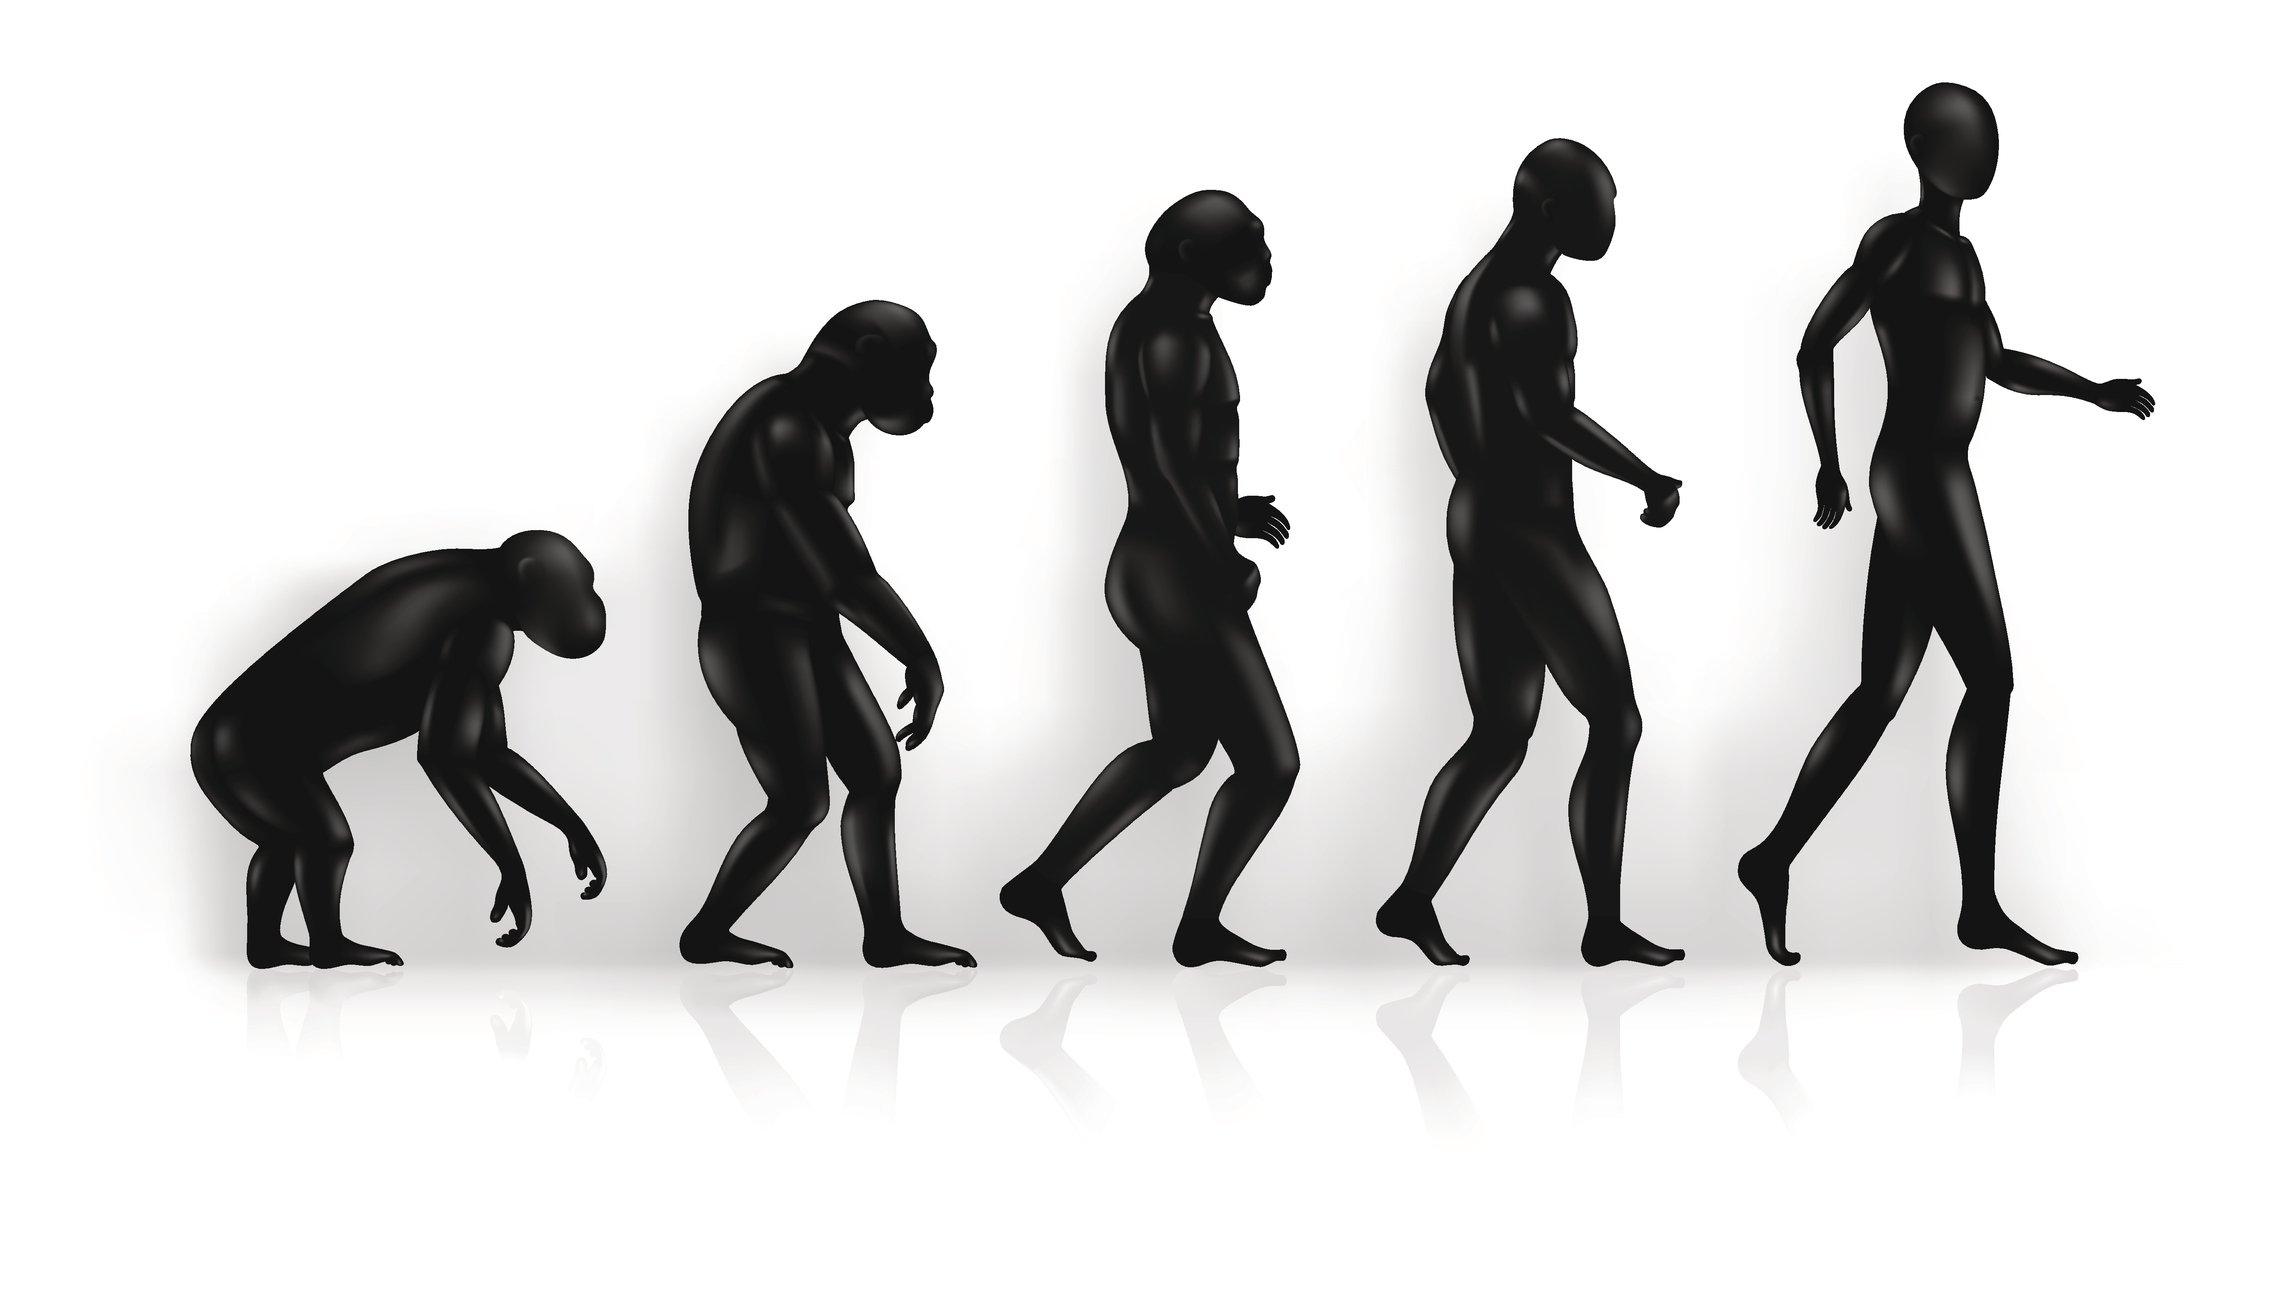 La evolución del ser humano